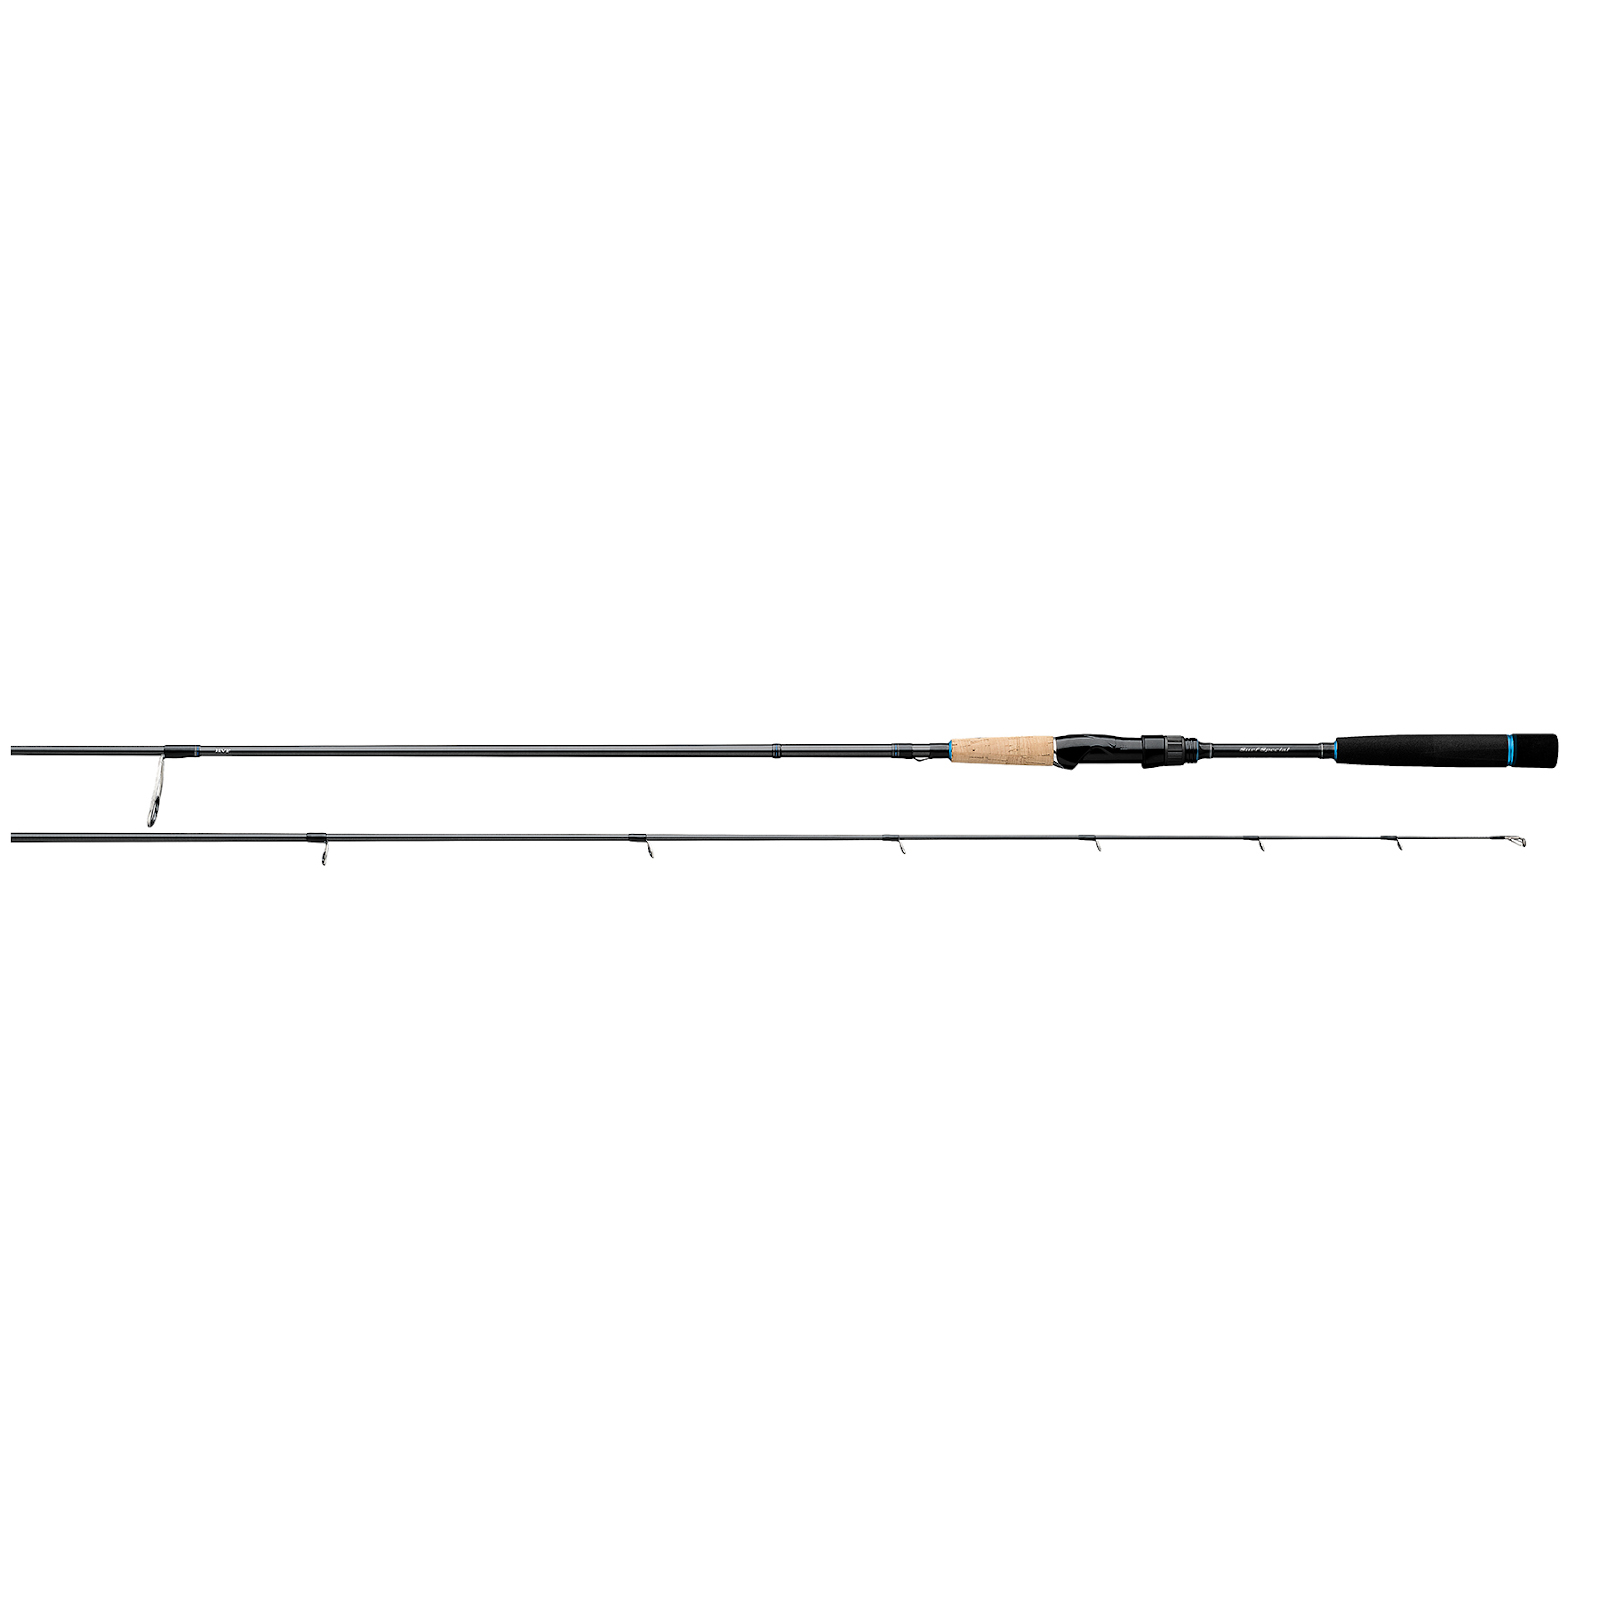 Daiwa Fishing Rod - Sealine Surf 9ft Spinning Rod at best price in Kochi